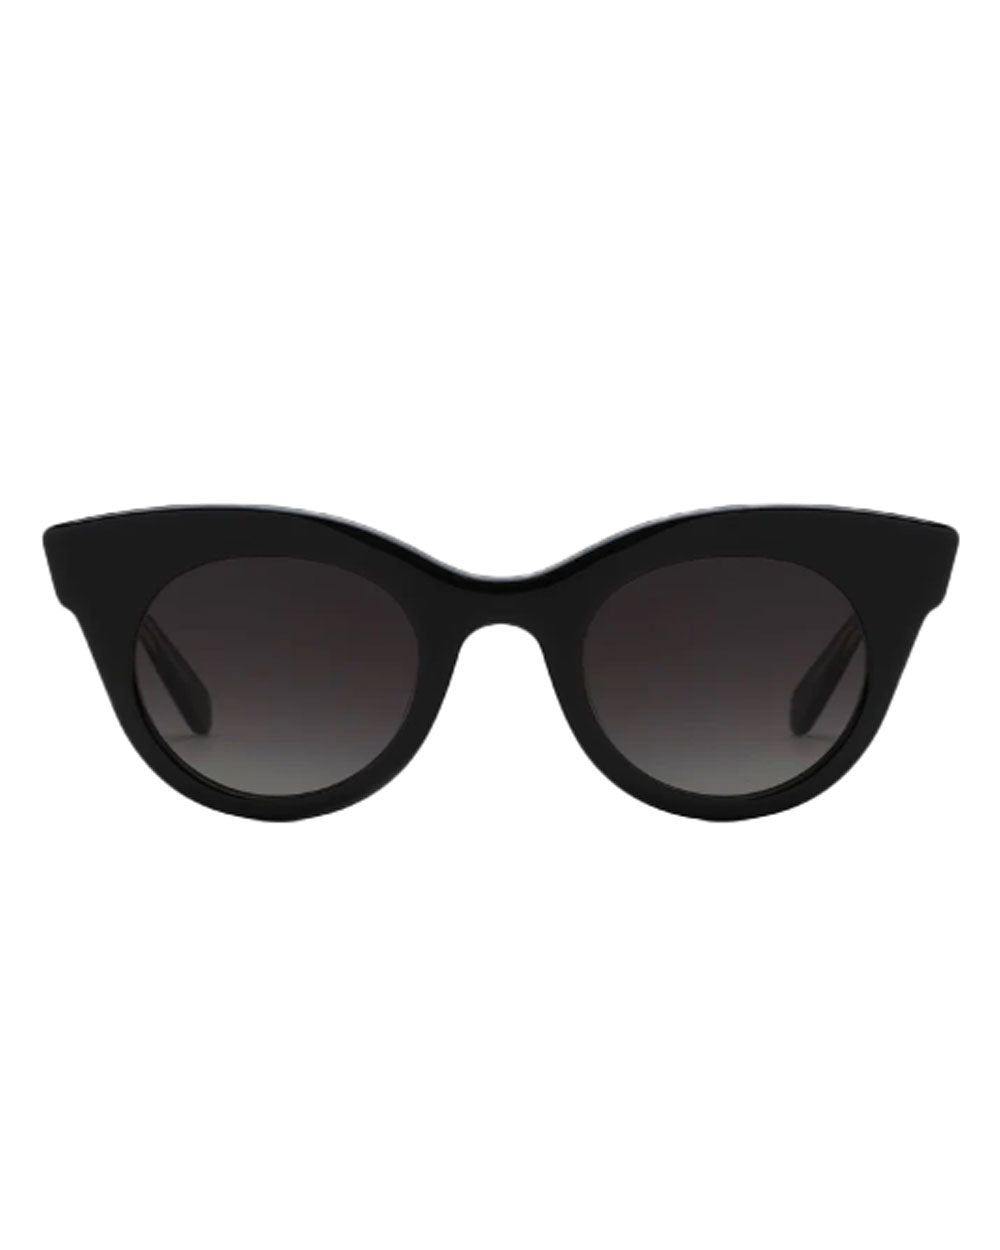 Olivia Sunglasses in Black Crystal